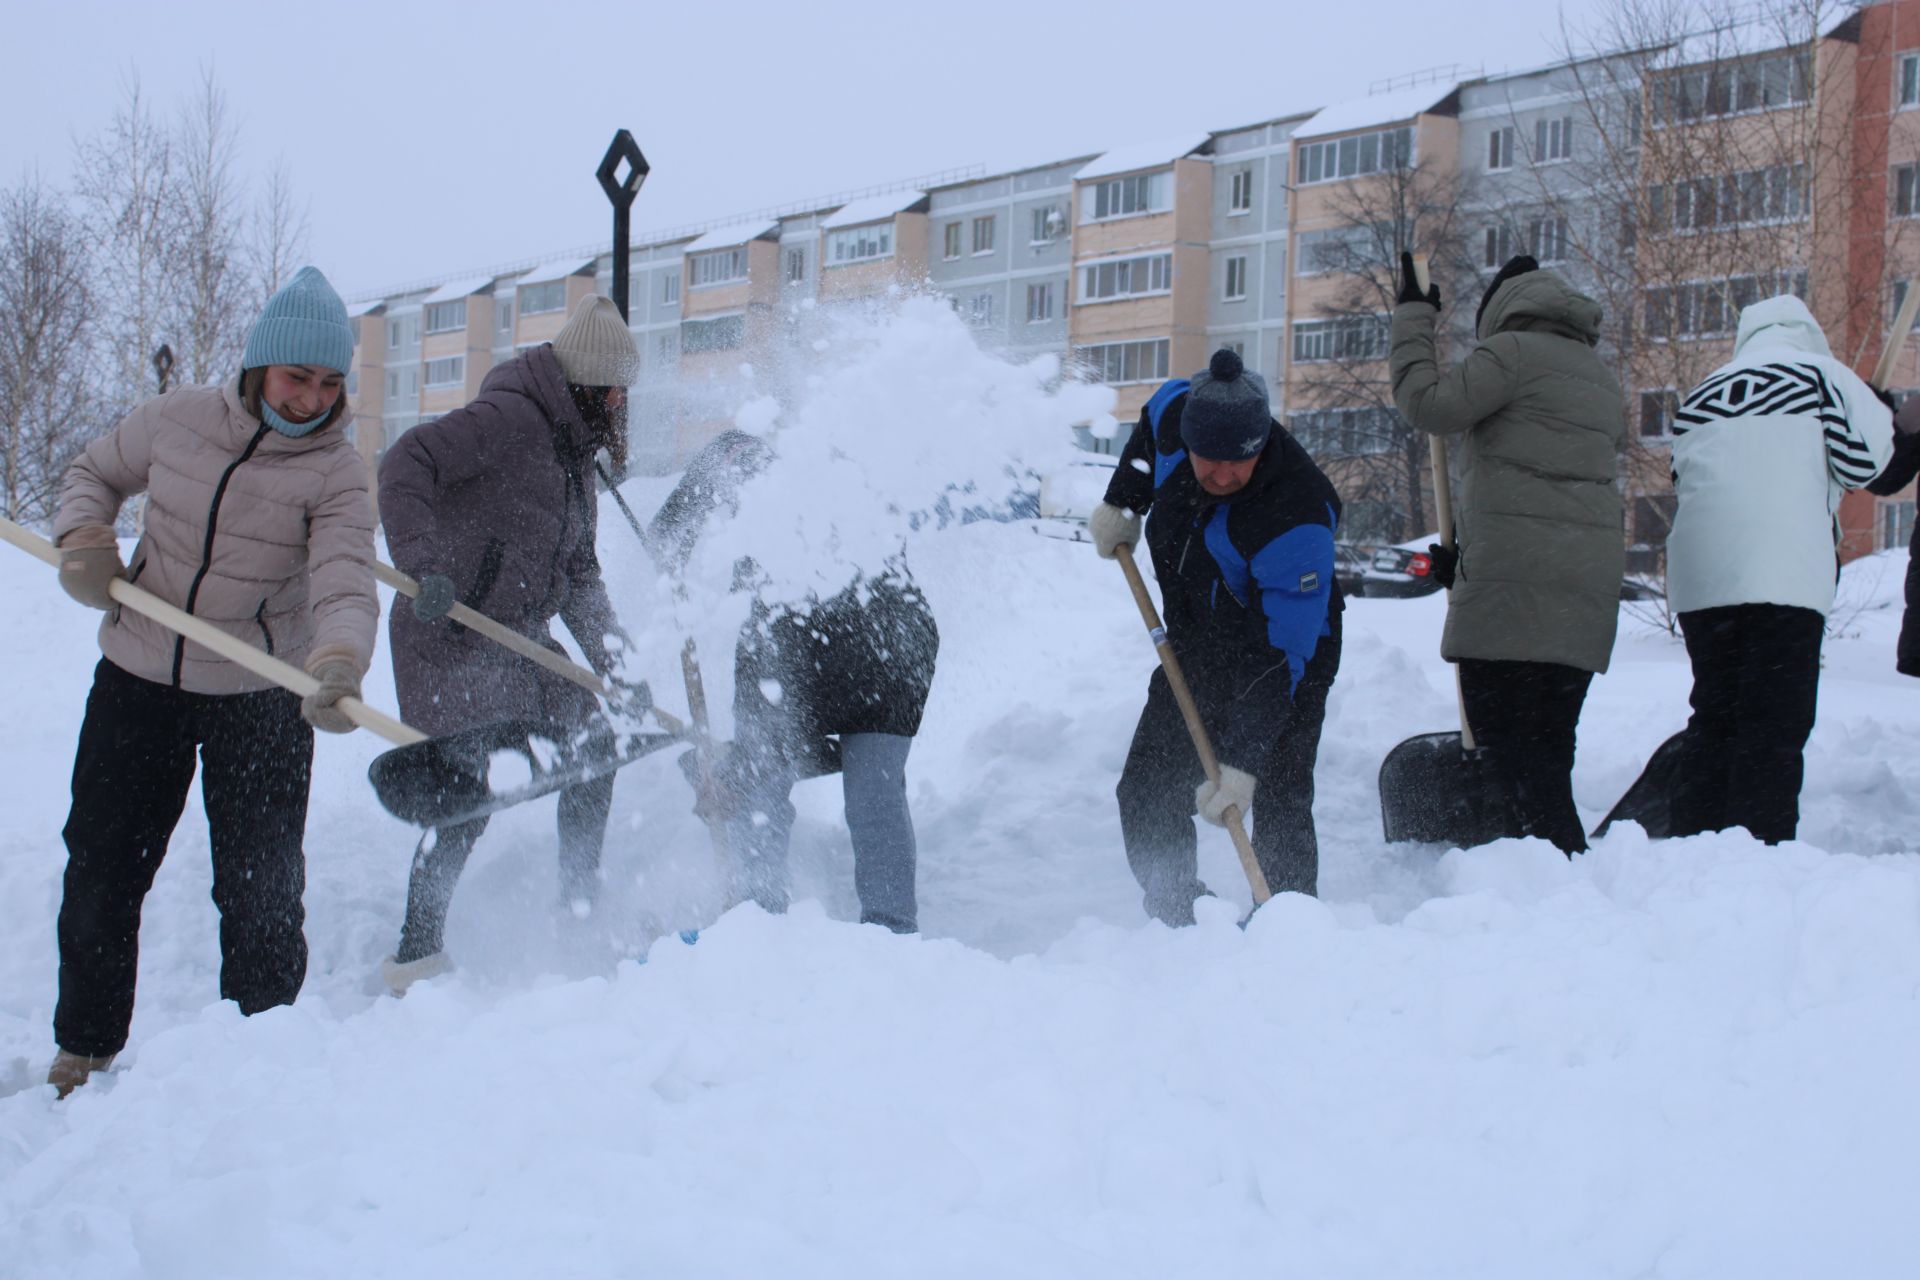 Представители Управления образования города Азнакаево организовали уборку снега на территории парка Победы